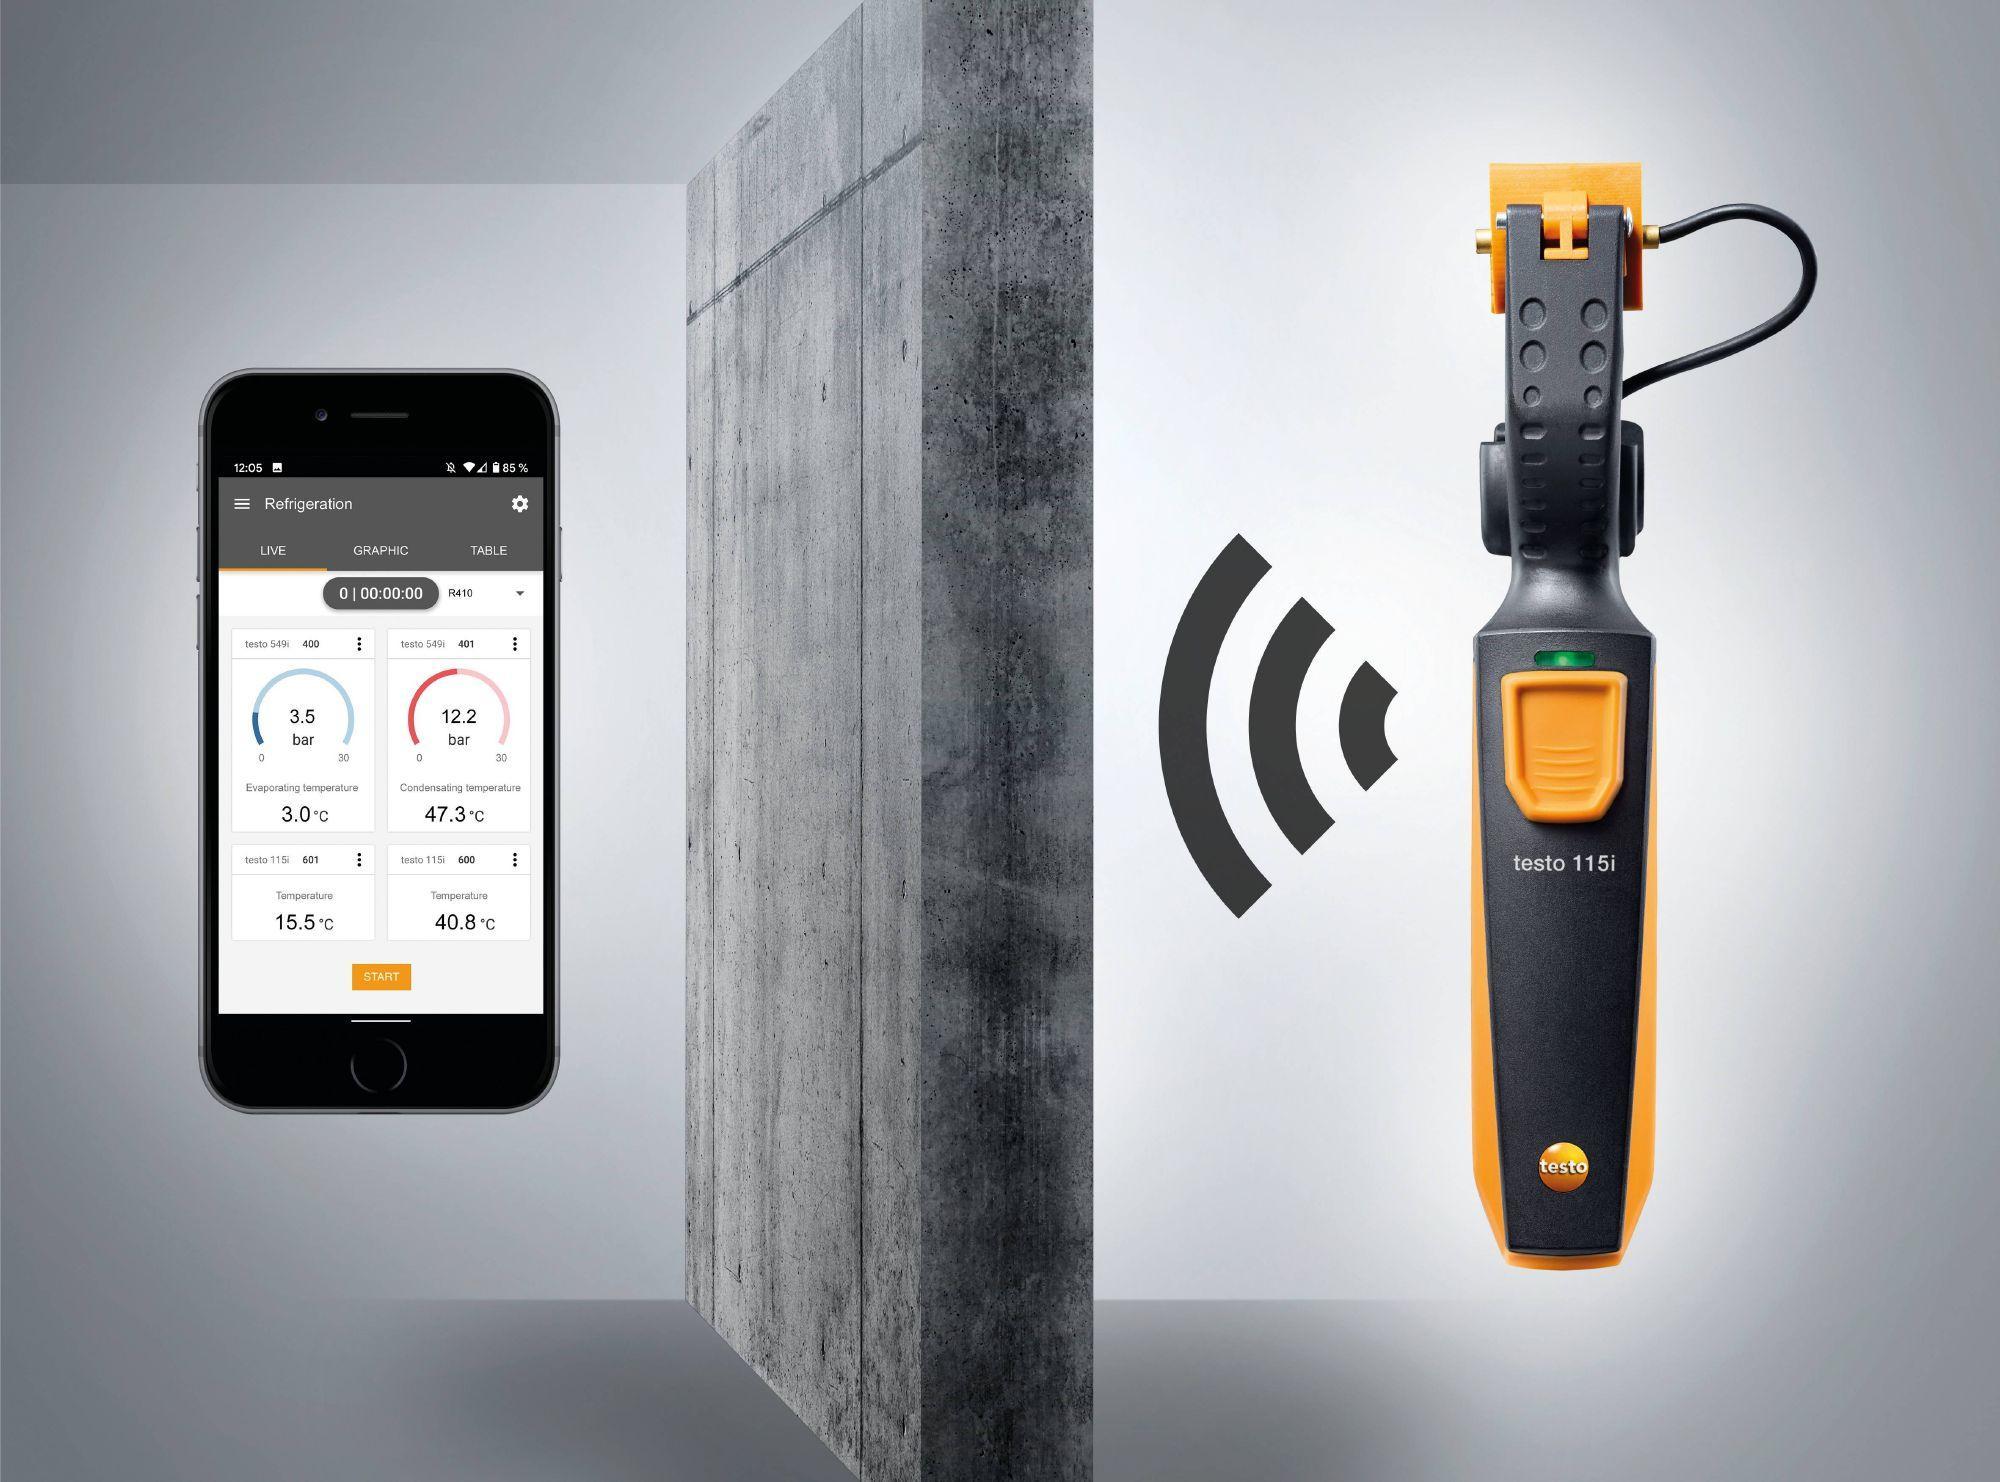 Termometro a pinza professionale TESTO 115i, Bluetooth 100m con App